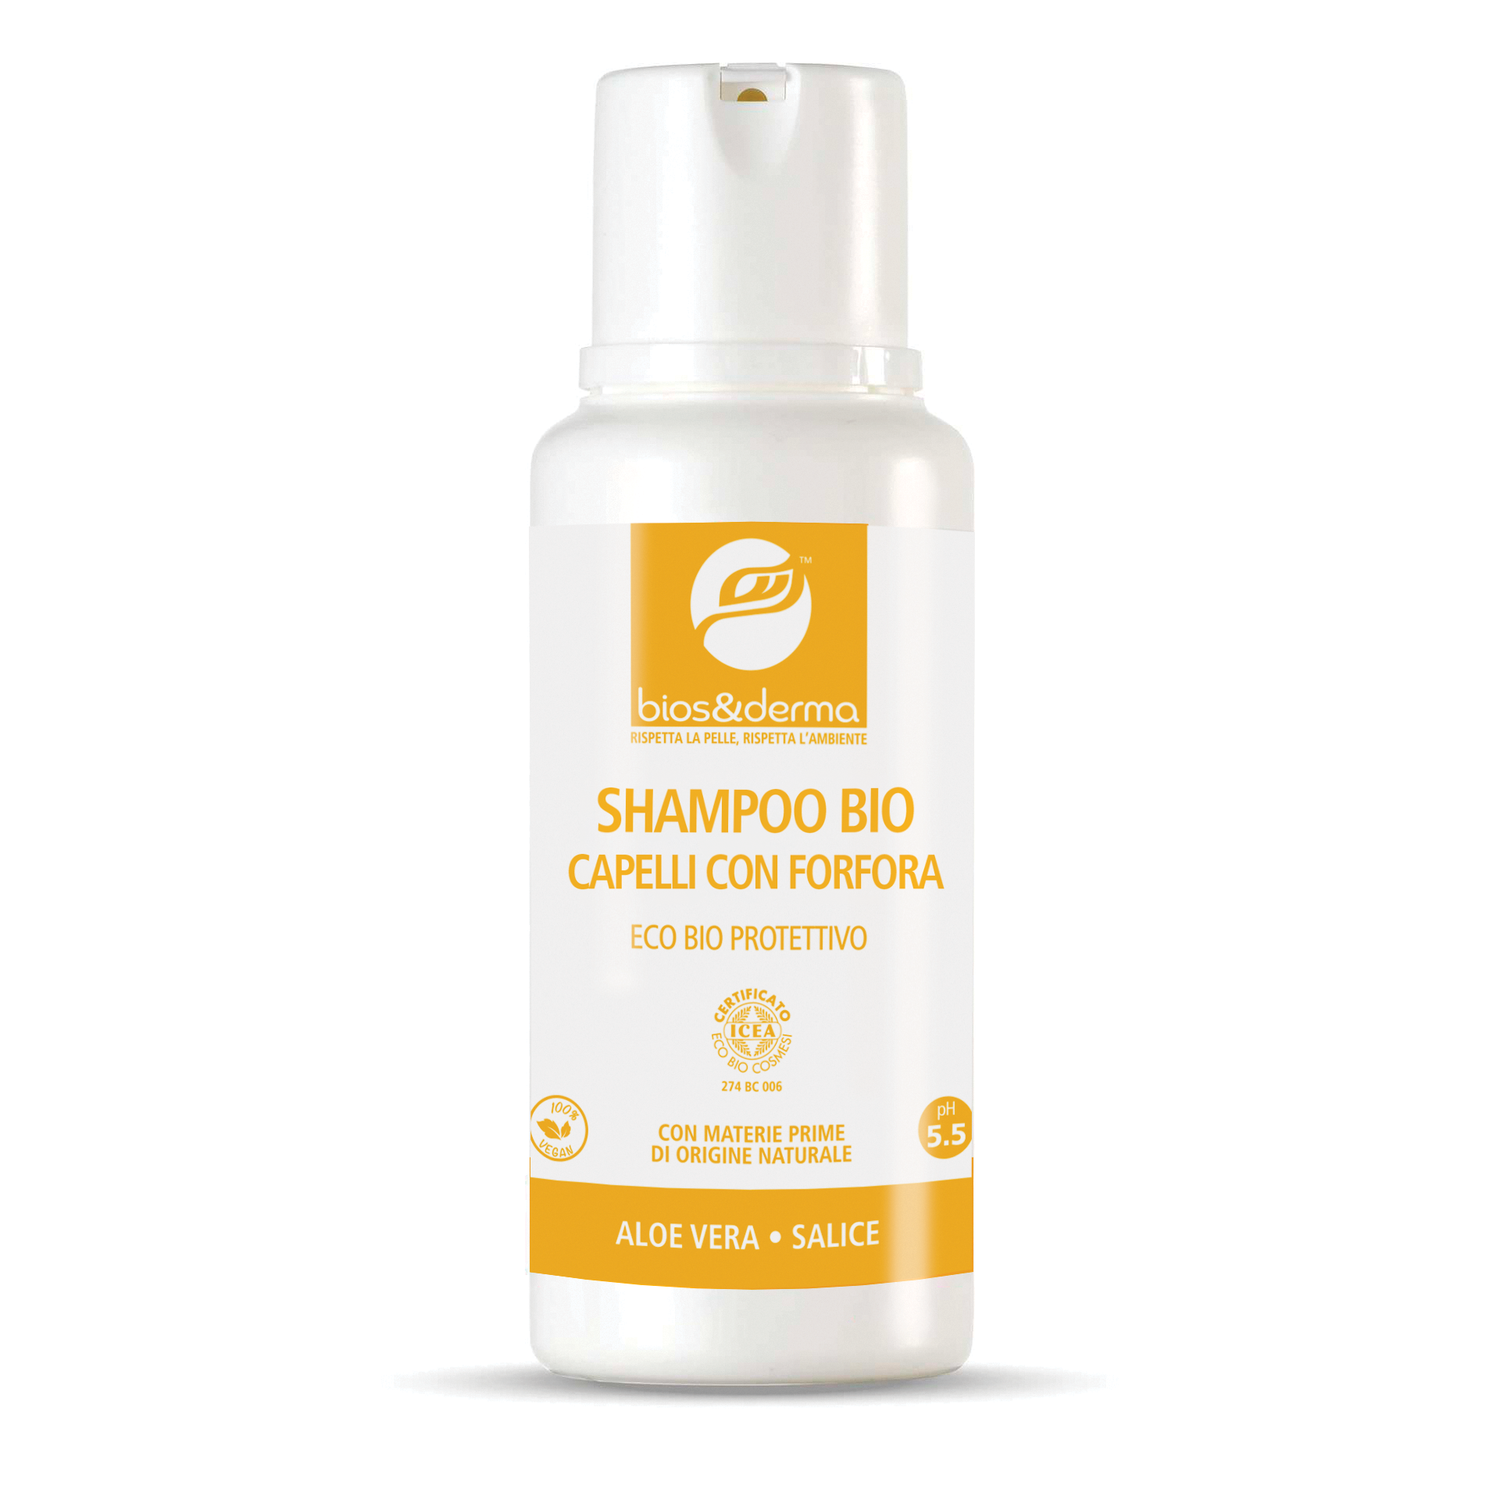 SHAMPOO BIO CAPELLI CON FORFORA (250ml) - Bios&Derma